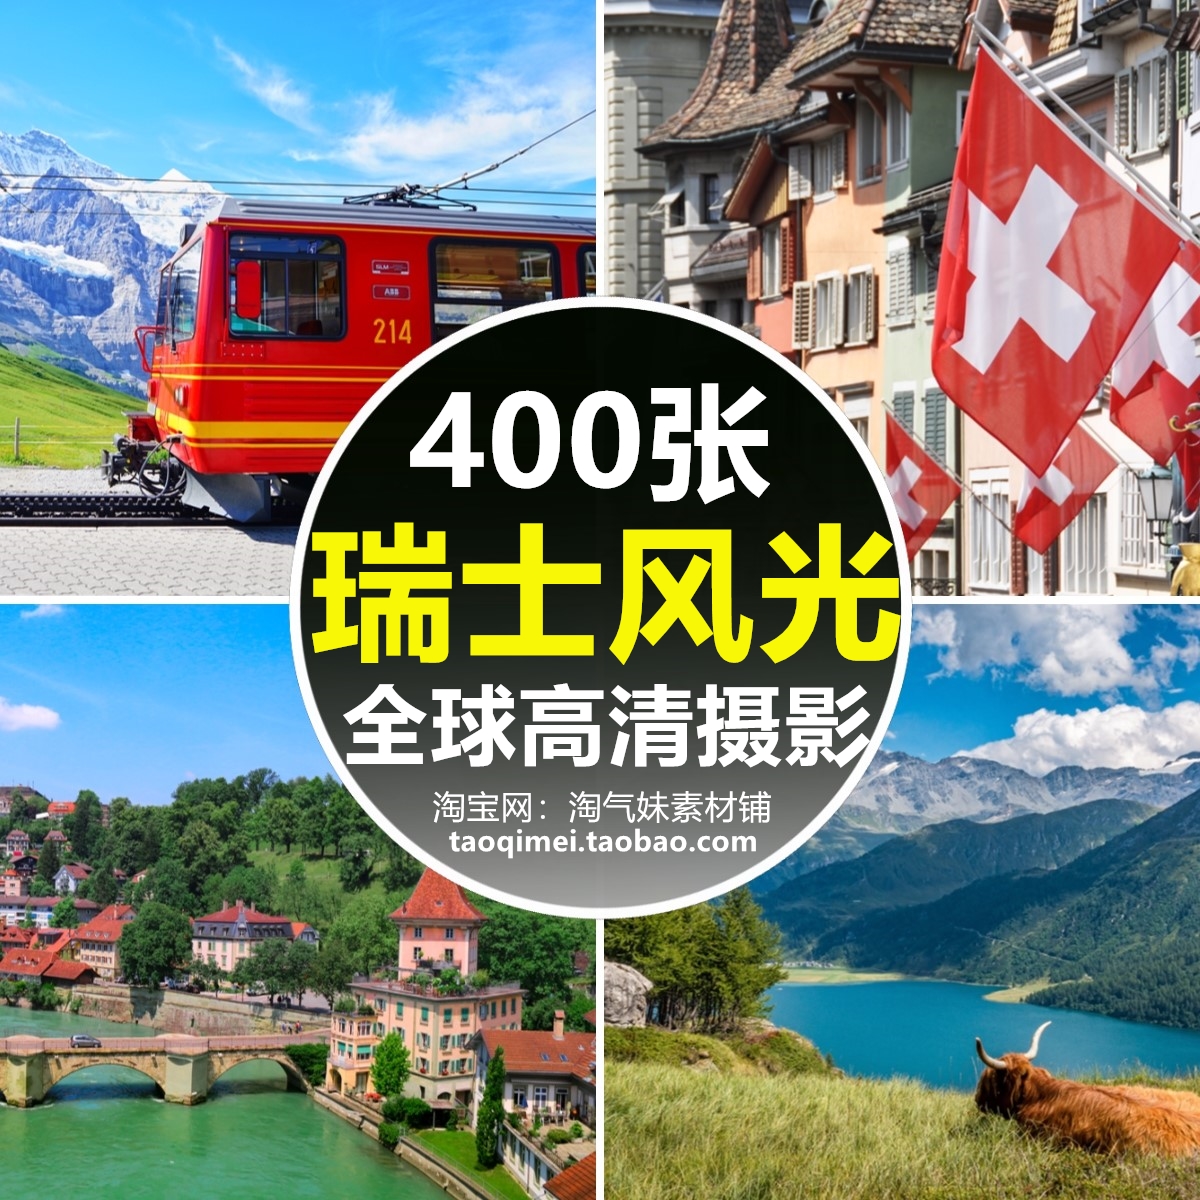 高清JPG瑞士风光图片欧洲小镇乡村田园阿尔卑斯风景旅游摄影素材